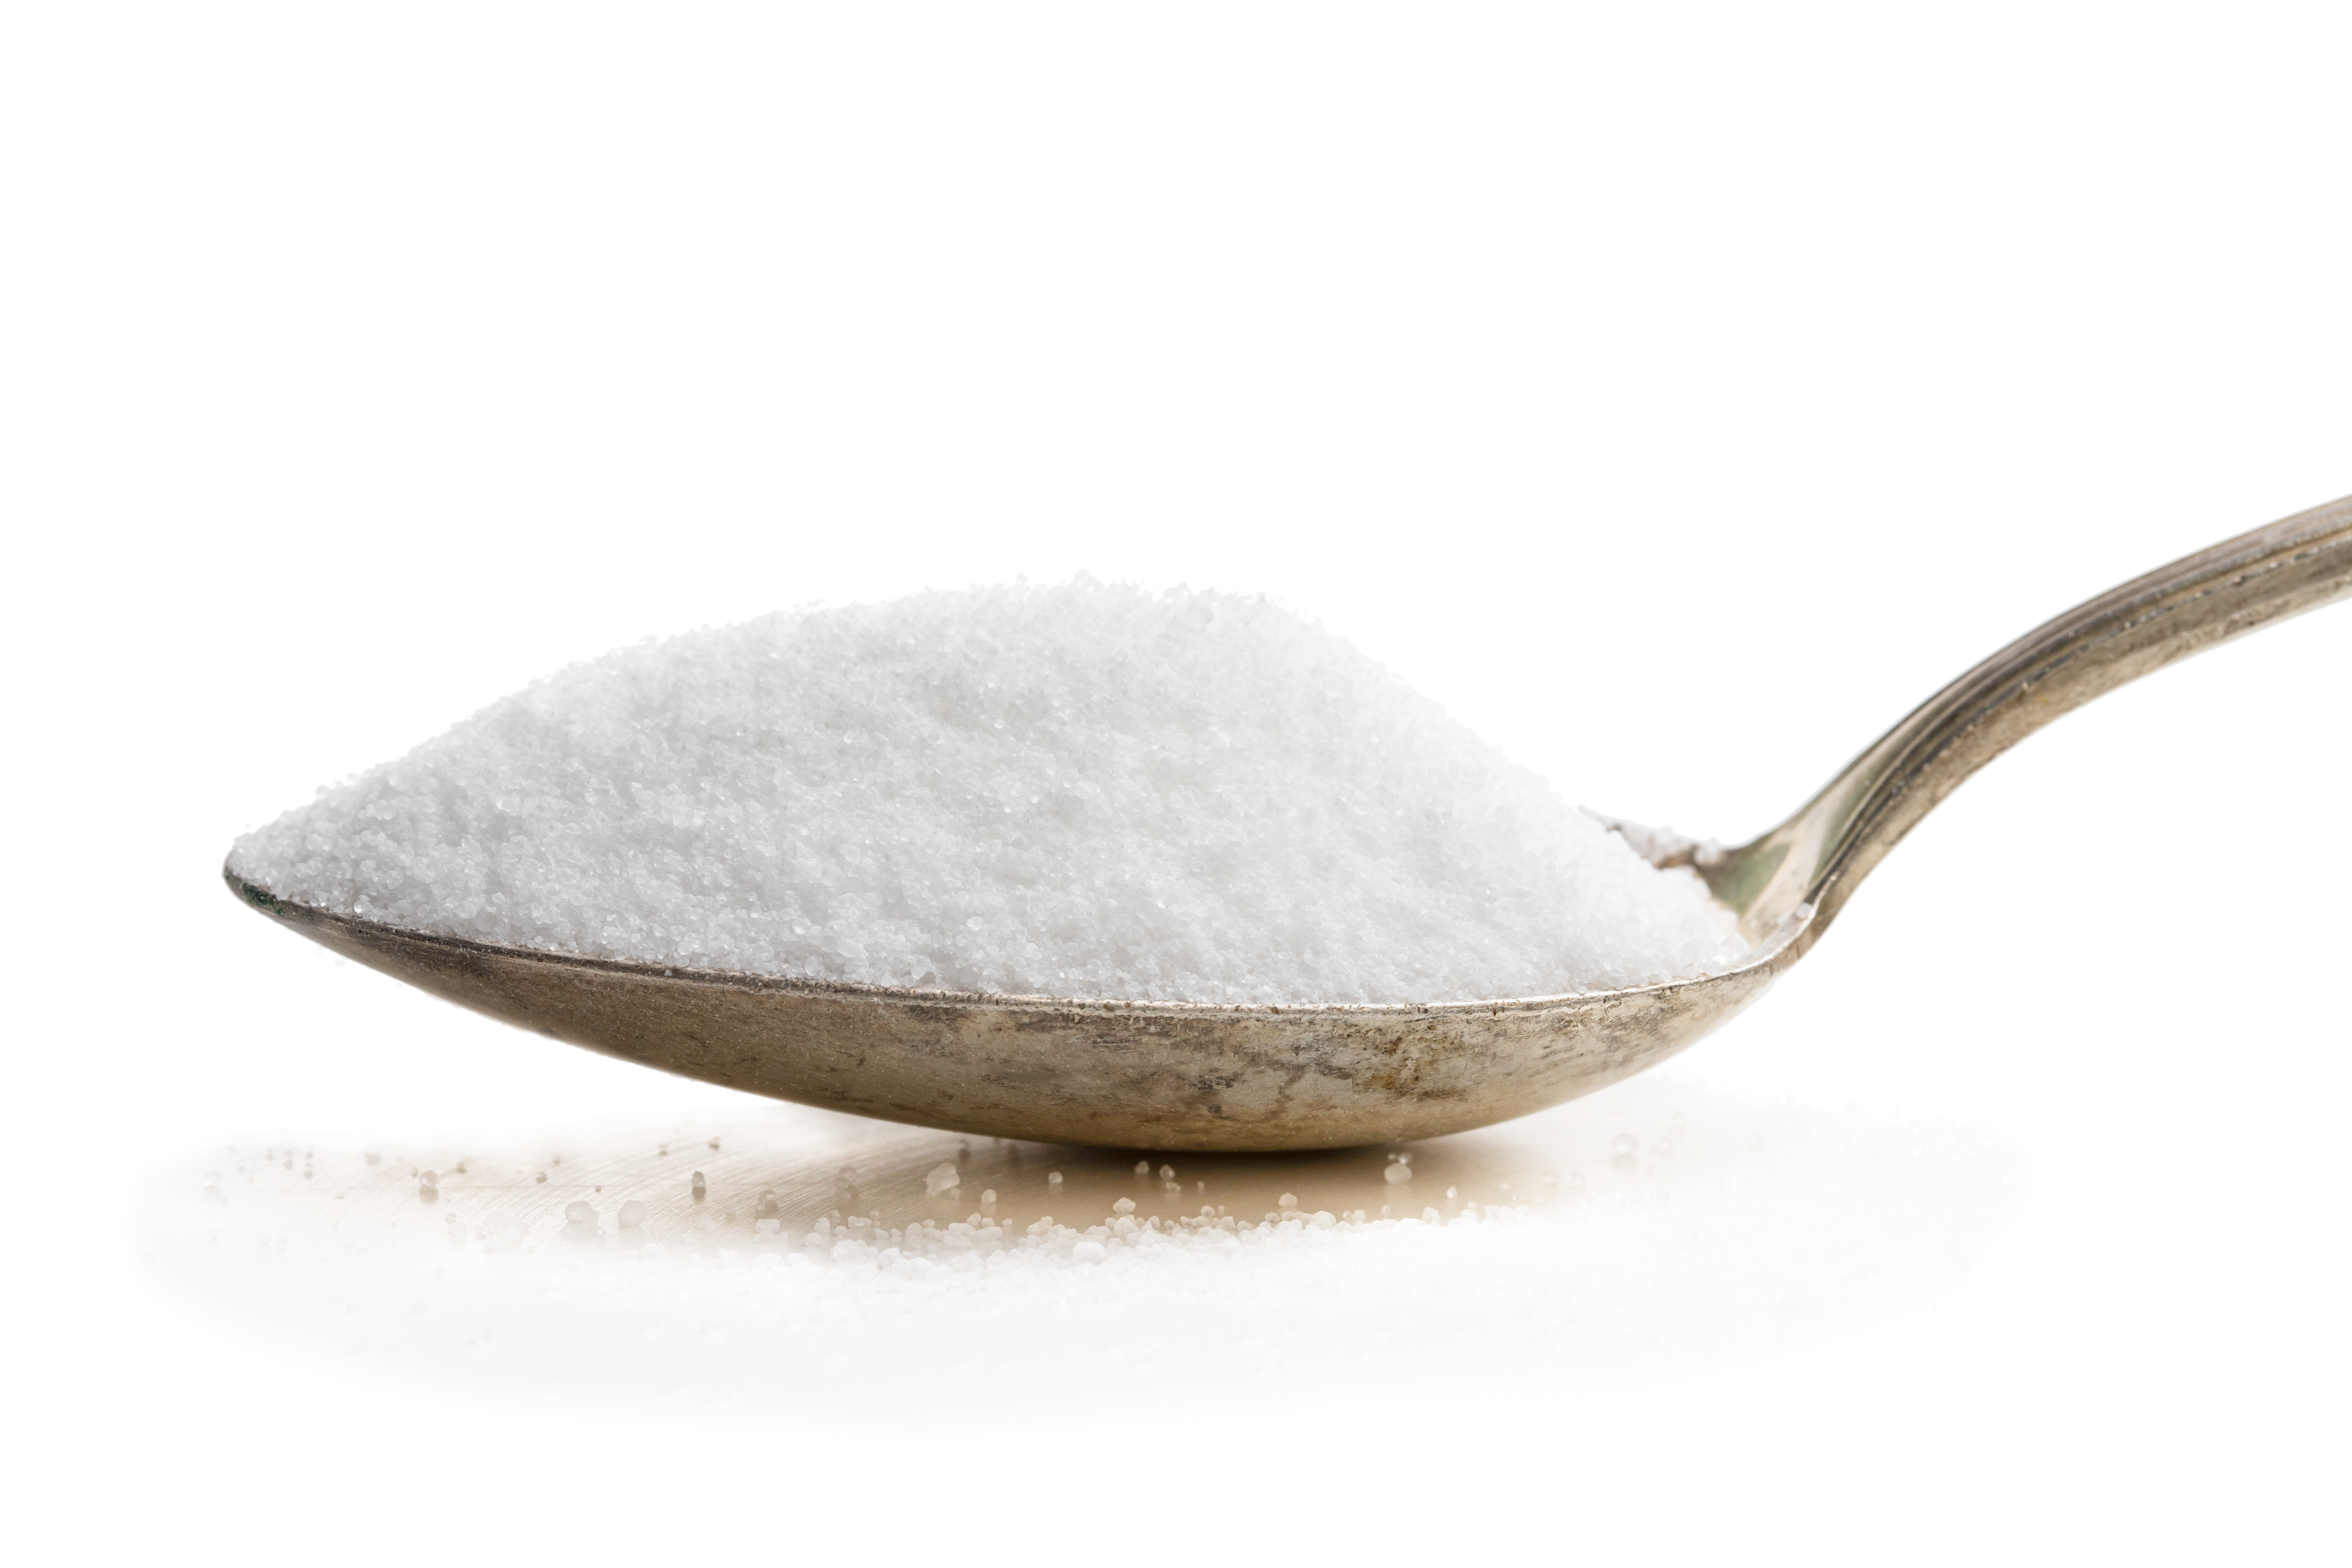 Ezt használd cukor helyett: mutatjuk, melyik édesítőszer mire jó igazán - Fogyókúra | Femina